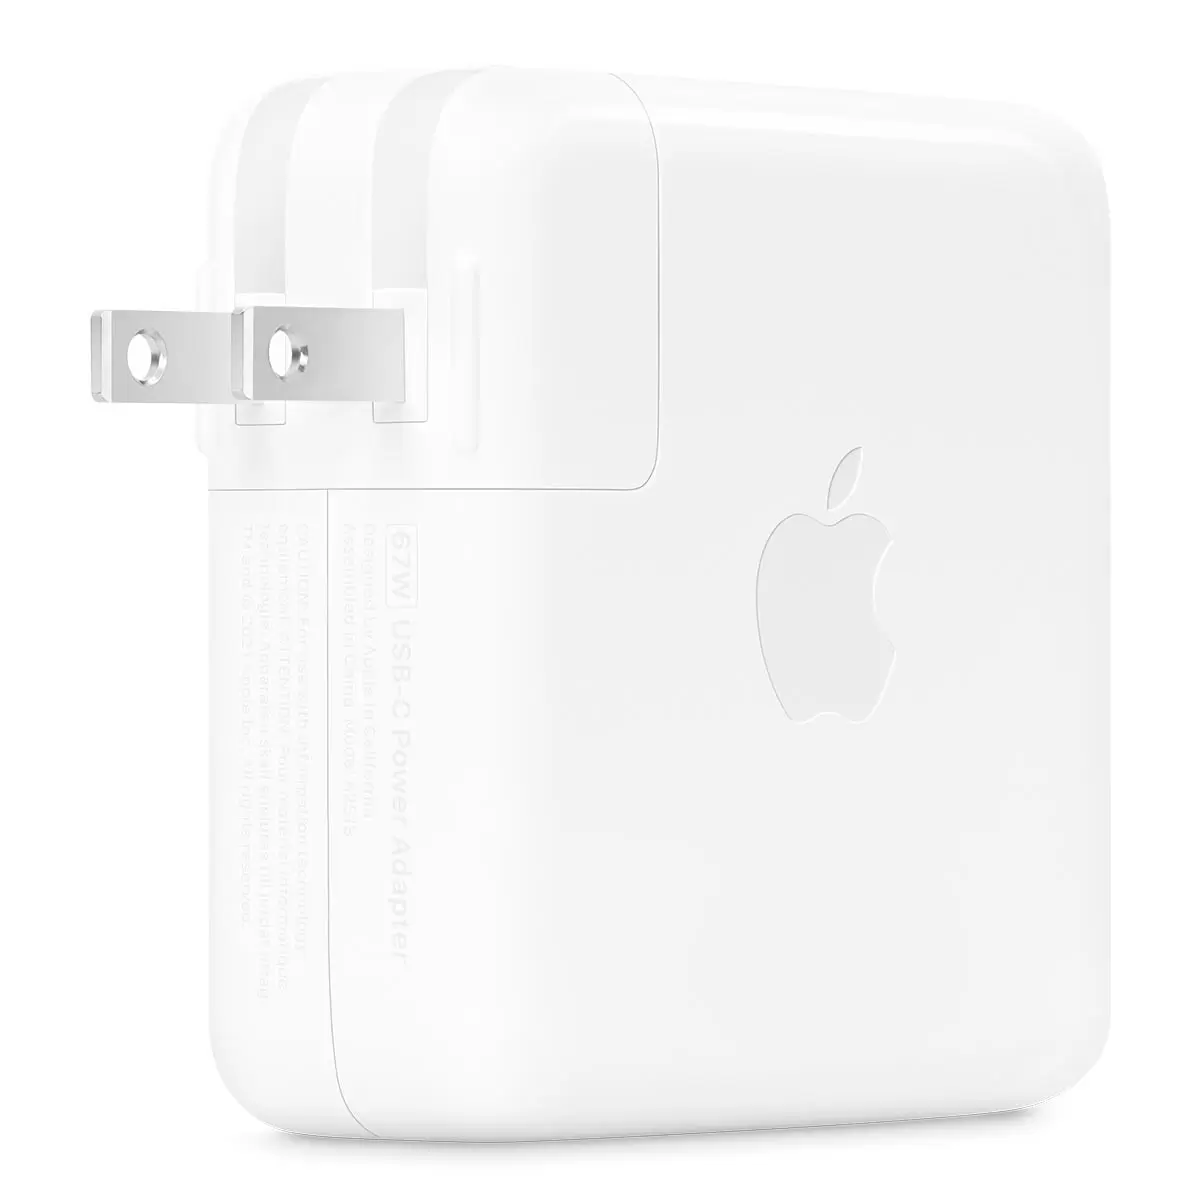 Apple 67W USB-C 電源轉接器